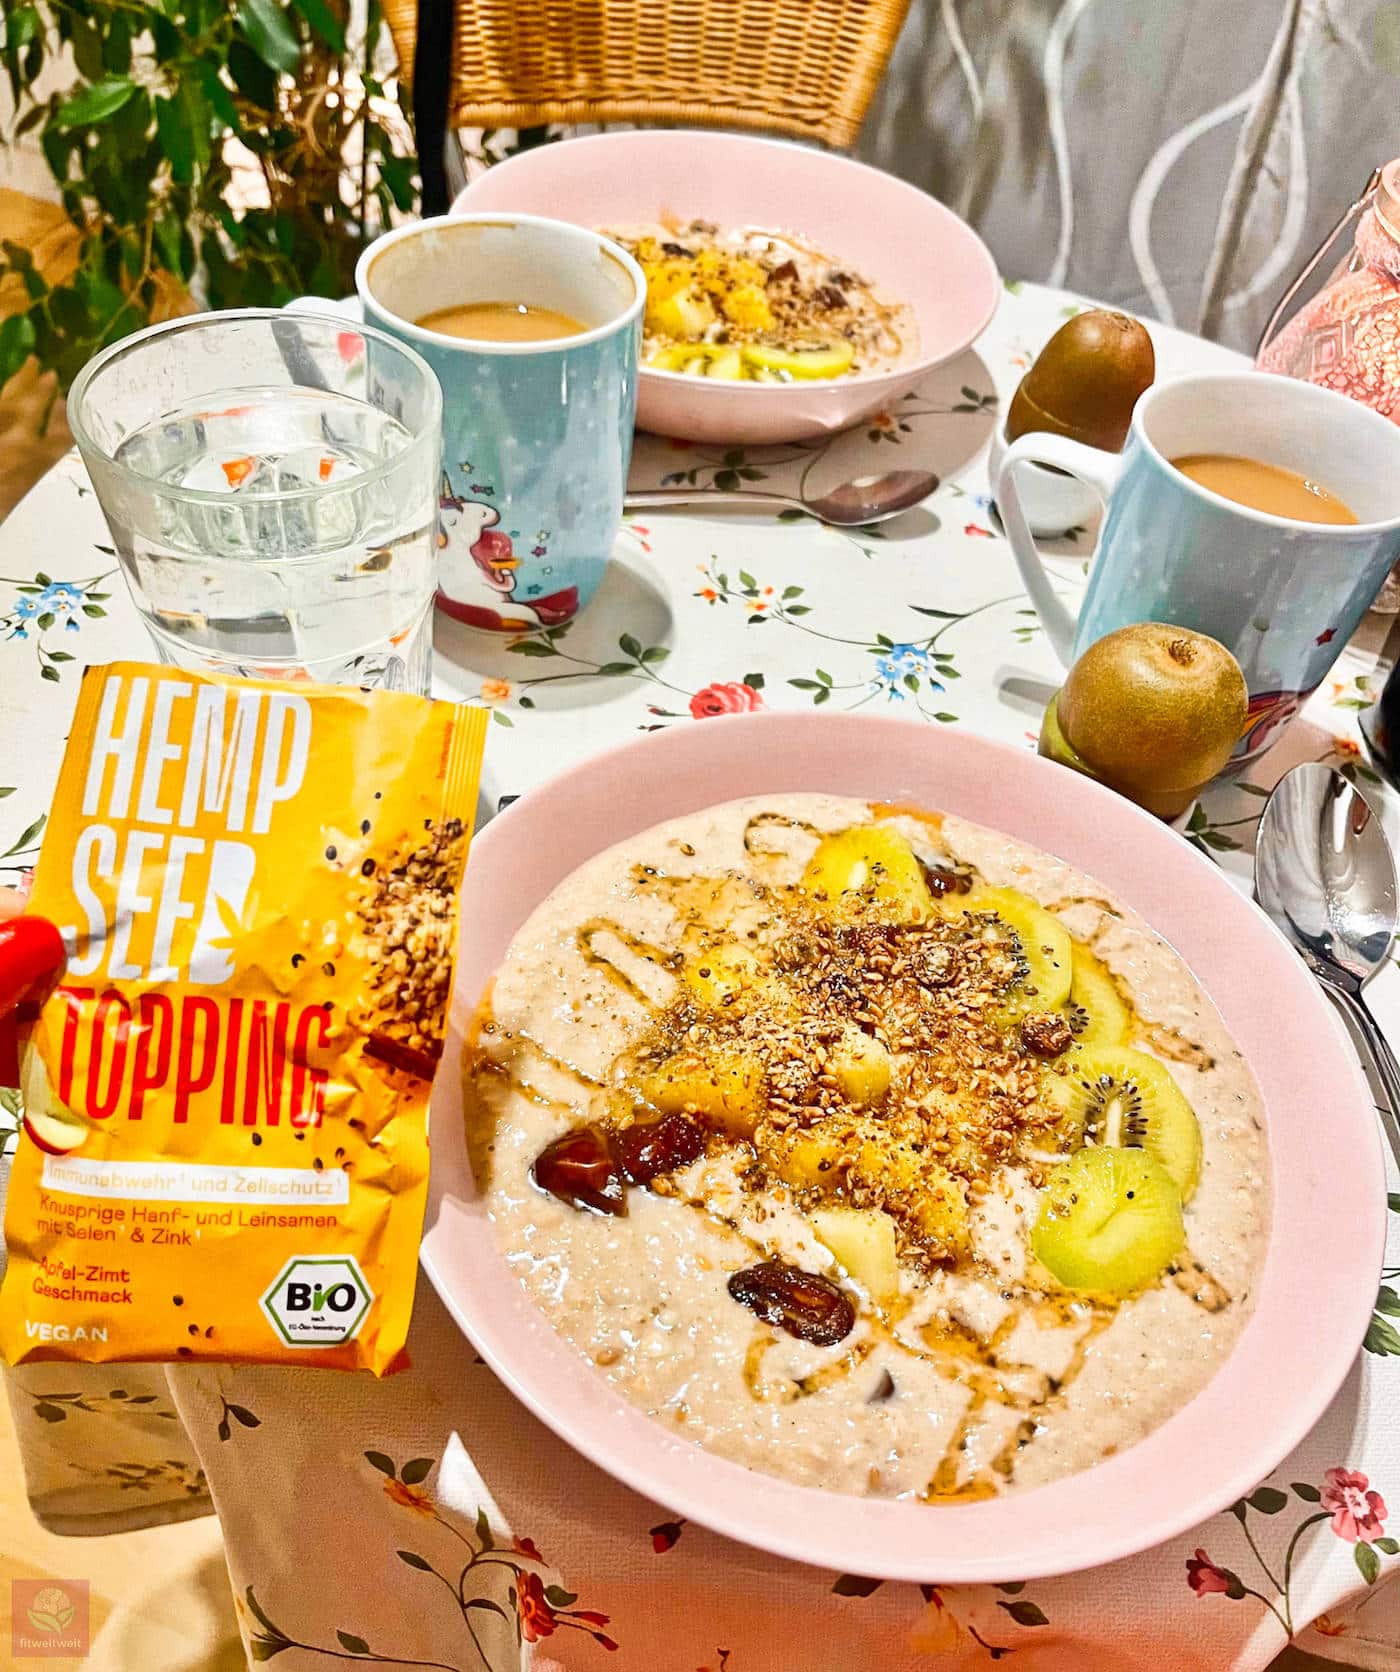 Braineffect Erfahrungen Hemp Seed Topping Daily Gut Porridge Good Morning